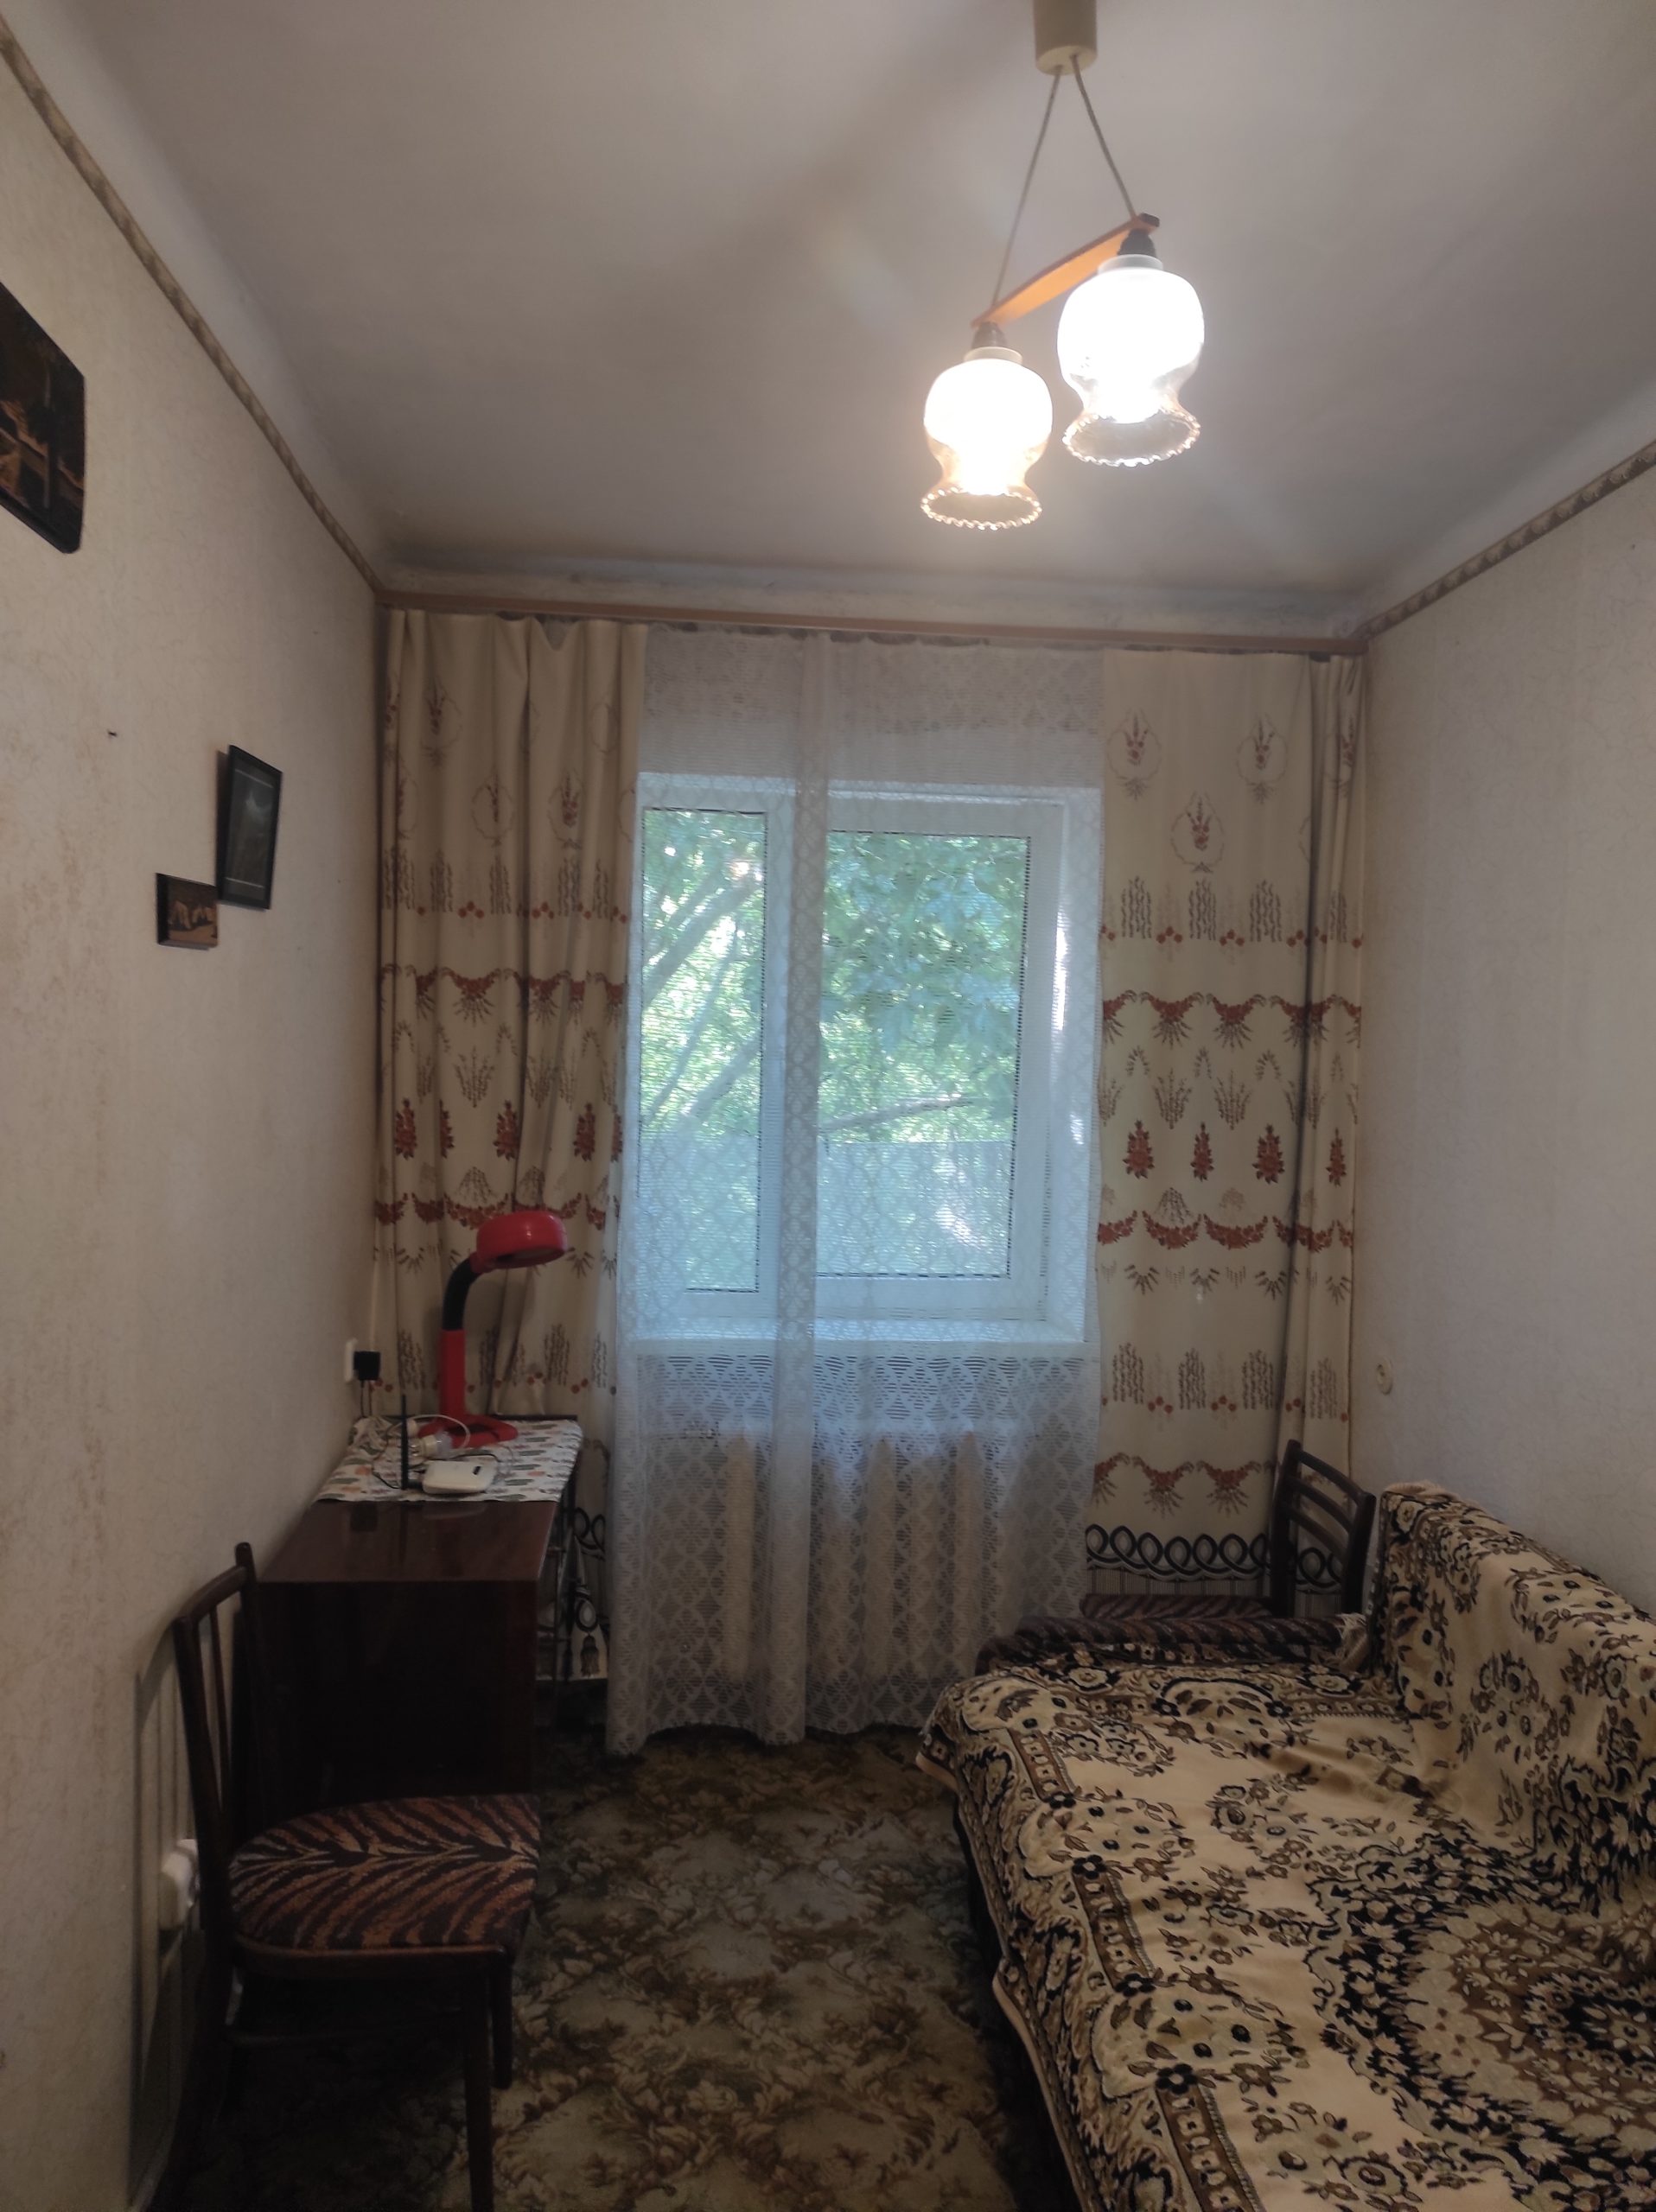 Продам двухкомнатную квартиру напротив парка Горького, о которой мечтает любая молодая семья